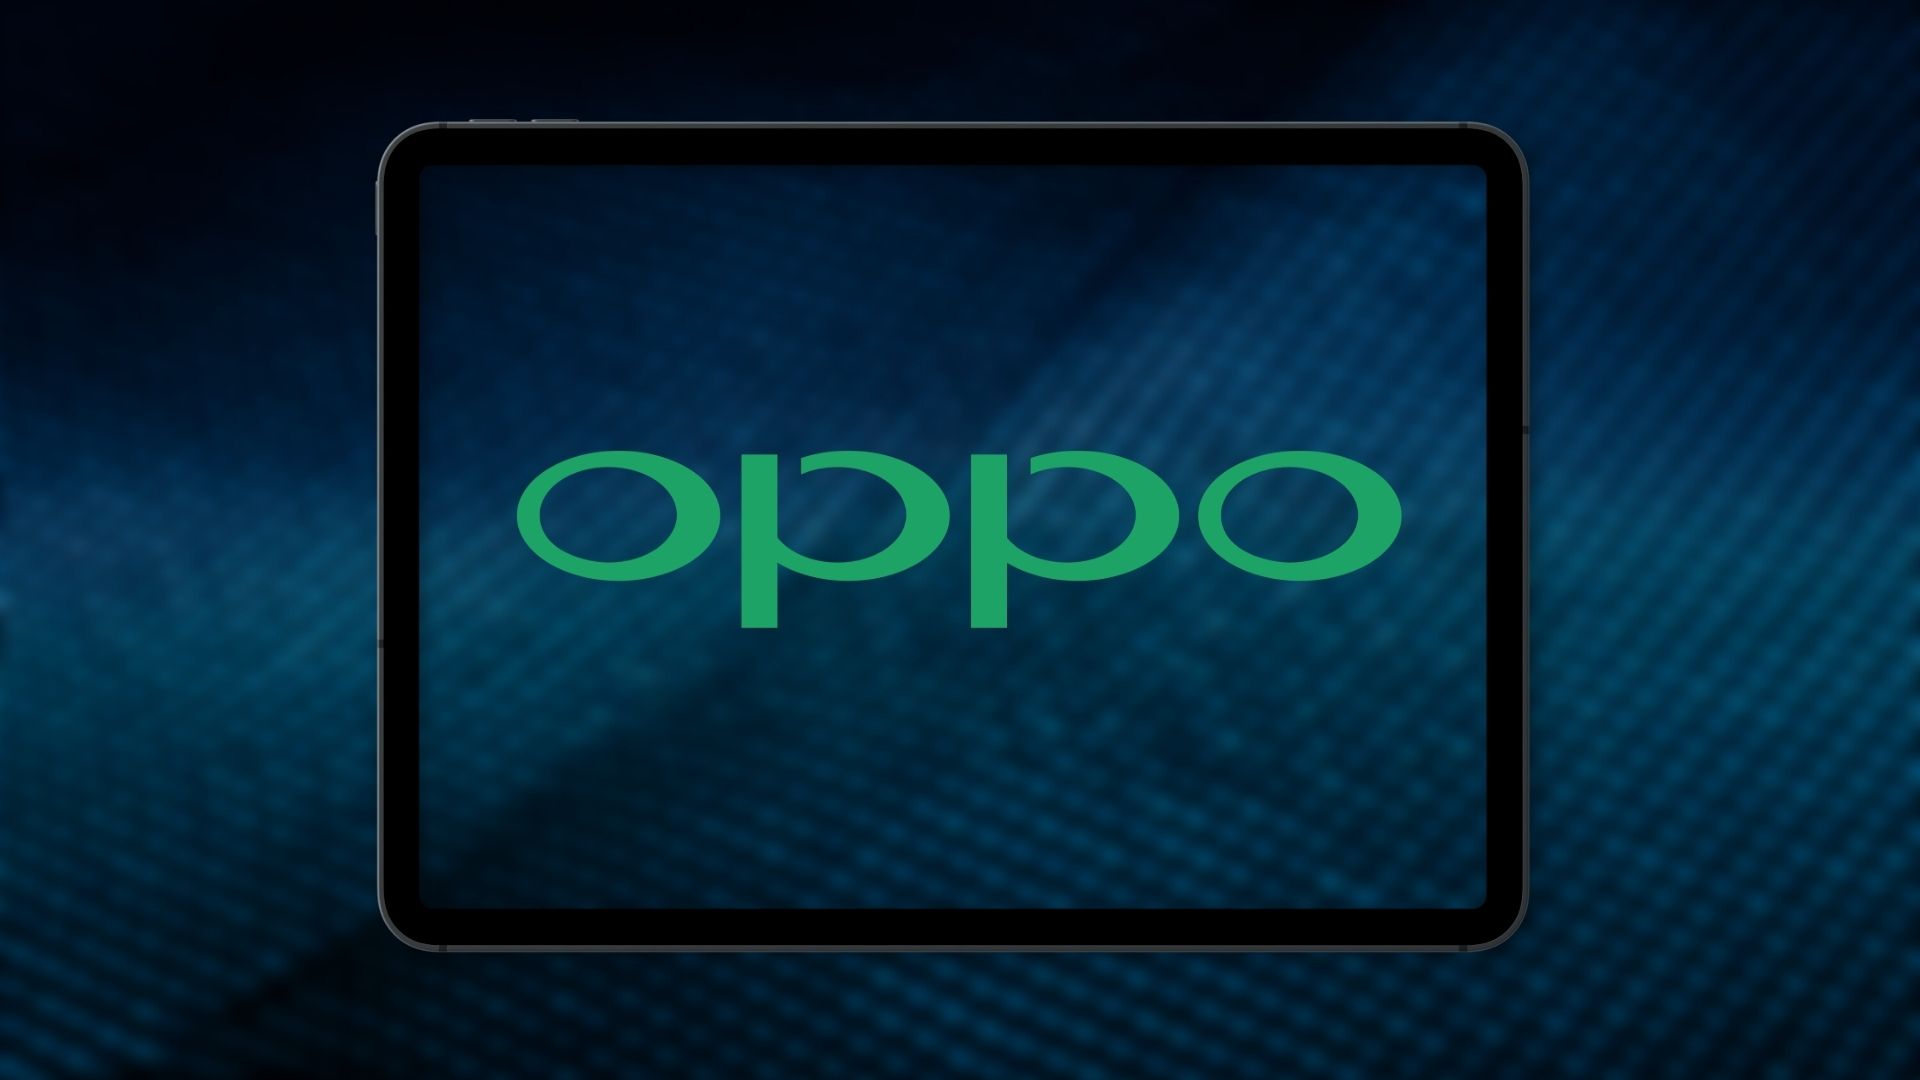 Tablet OPPO Pad otrzyma Snapdragon 870, pojemną baterię i ekran LCD 120 Hz z rysikiem